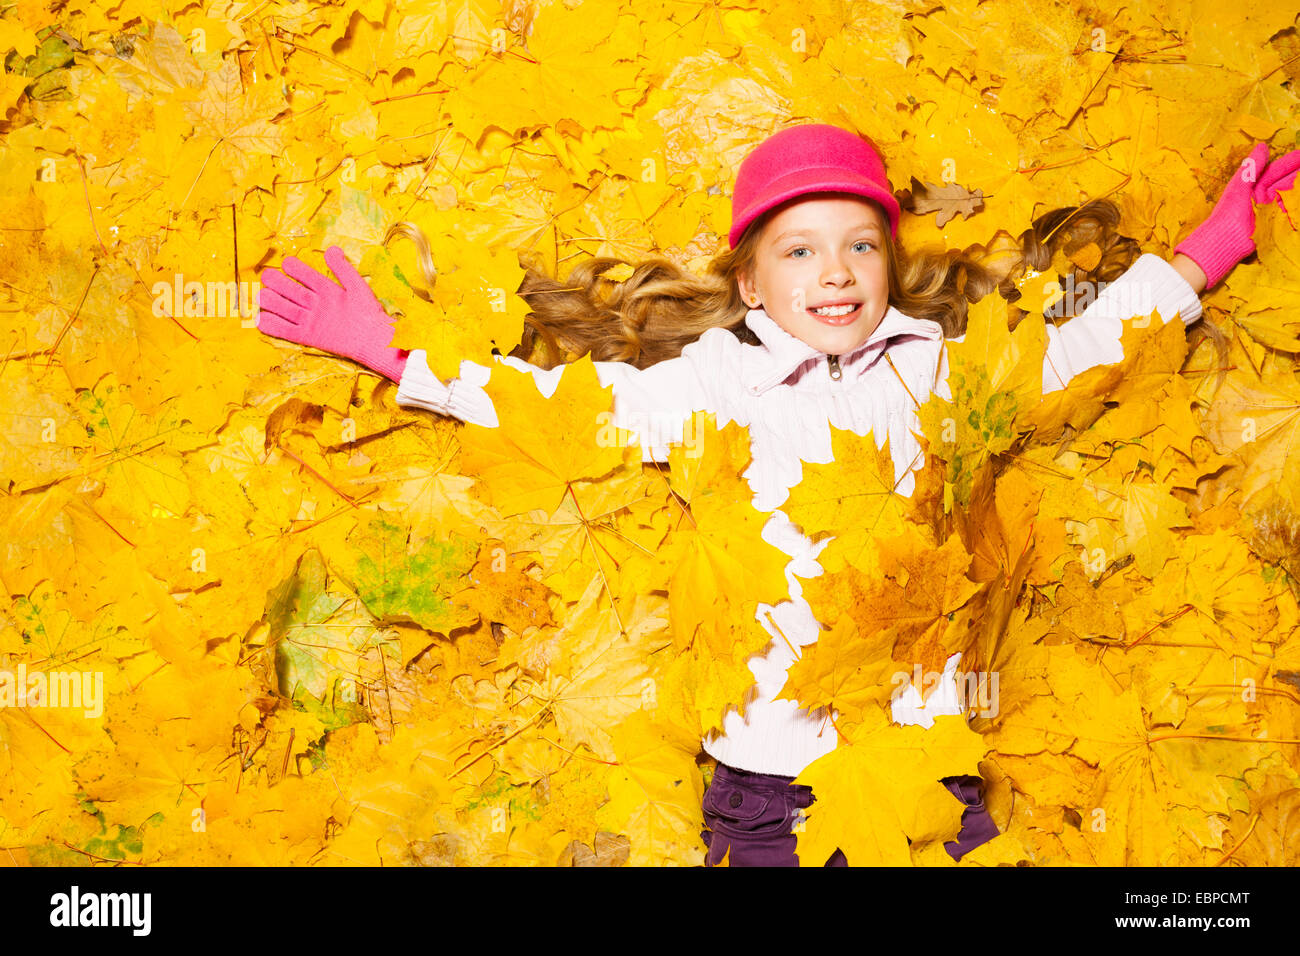 Happy smiling girl recouverte de feuilles d'automne Banque D'Images